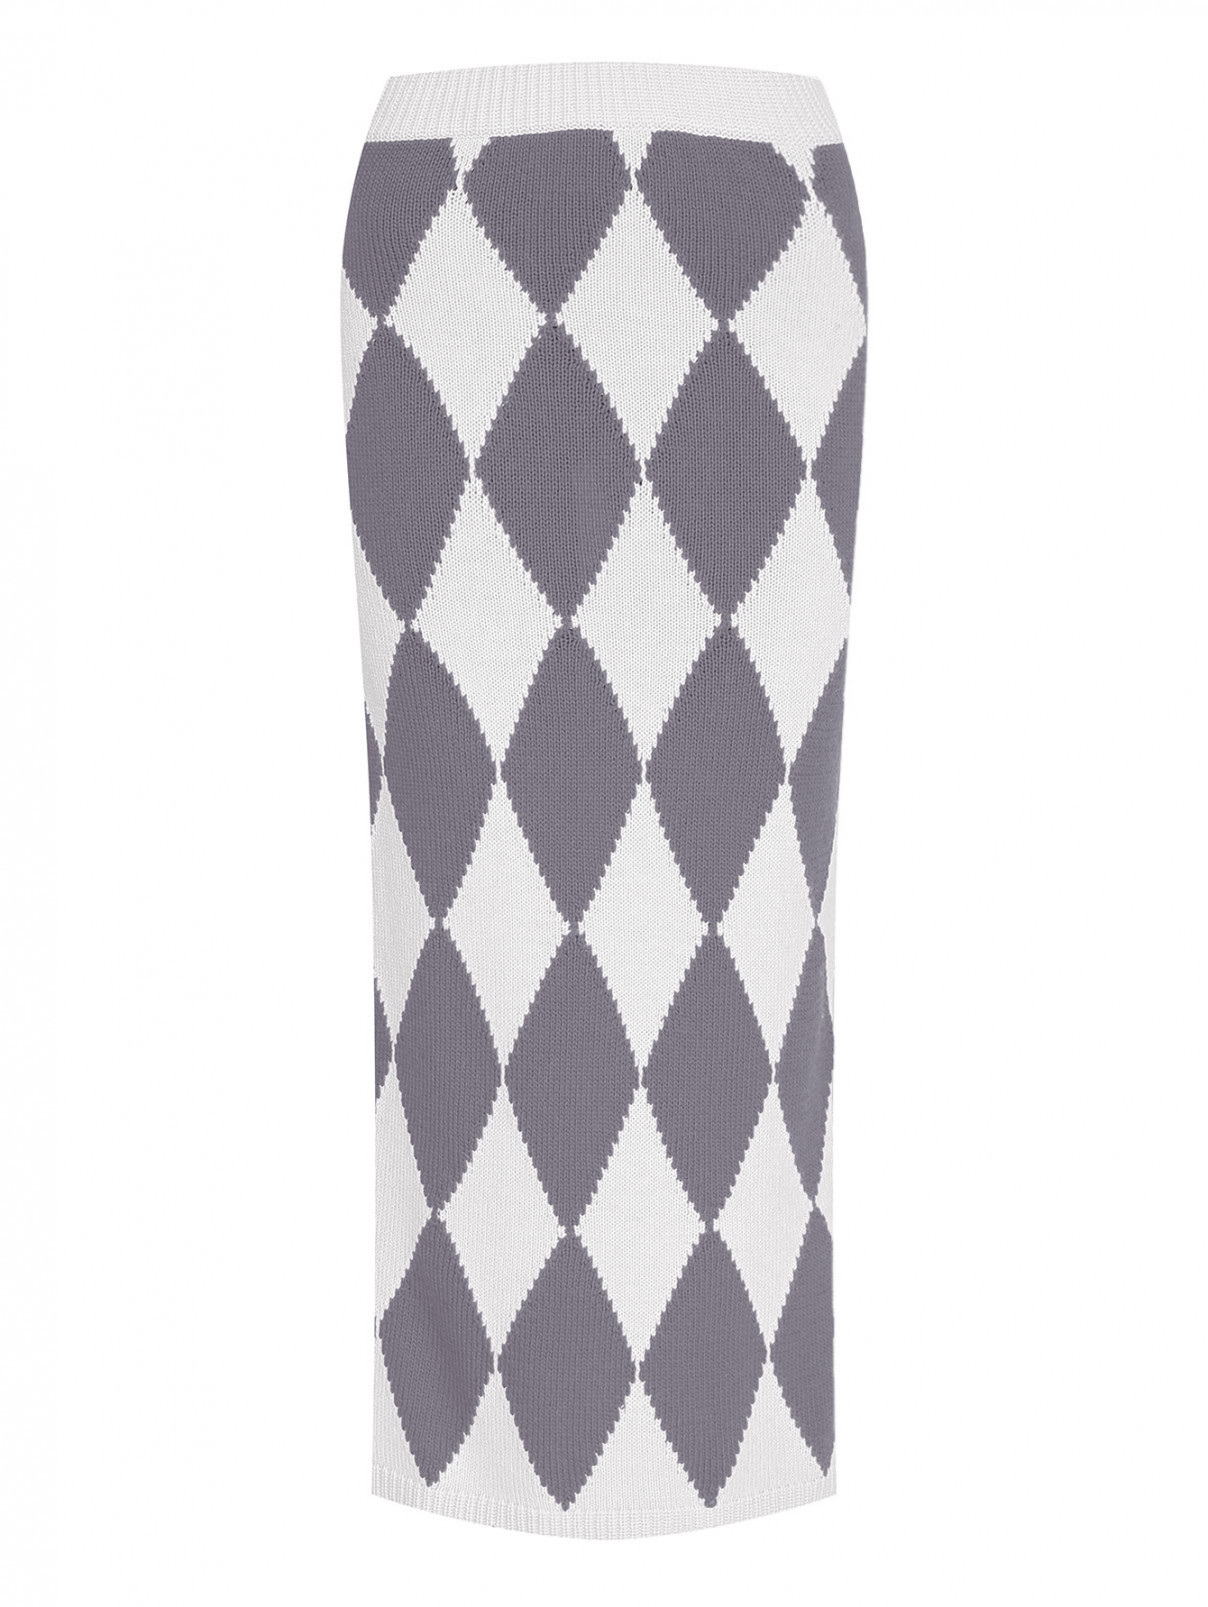 Трикотажная юбка с кашемиром Liviana Conti  –  Общий вид  – Цвет:  Серый